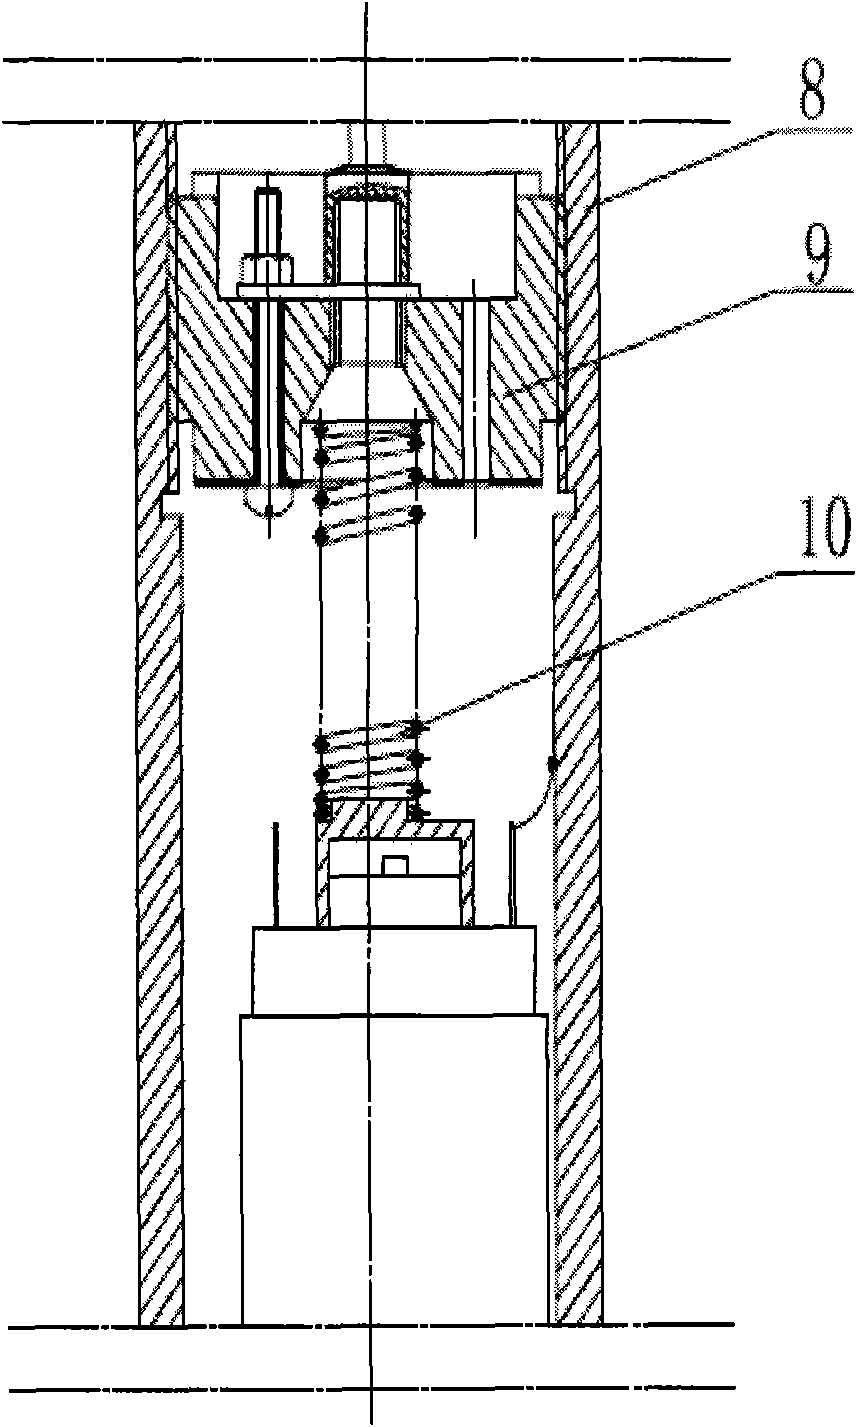 Novel electric directional coring apparatus